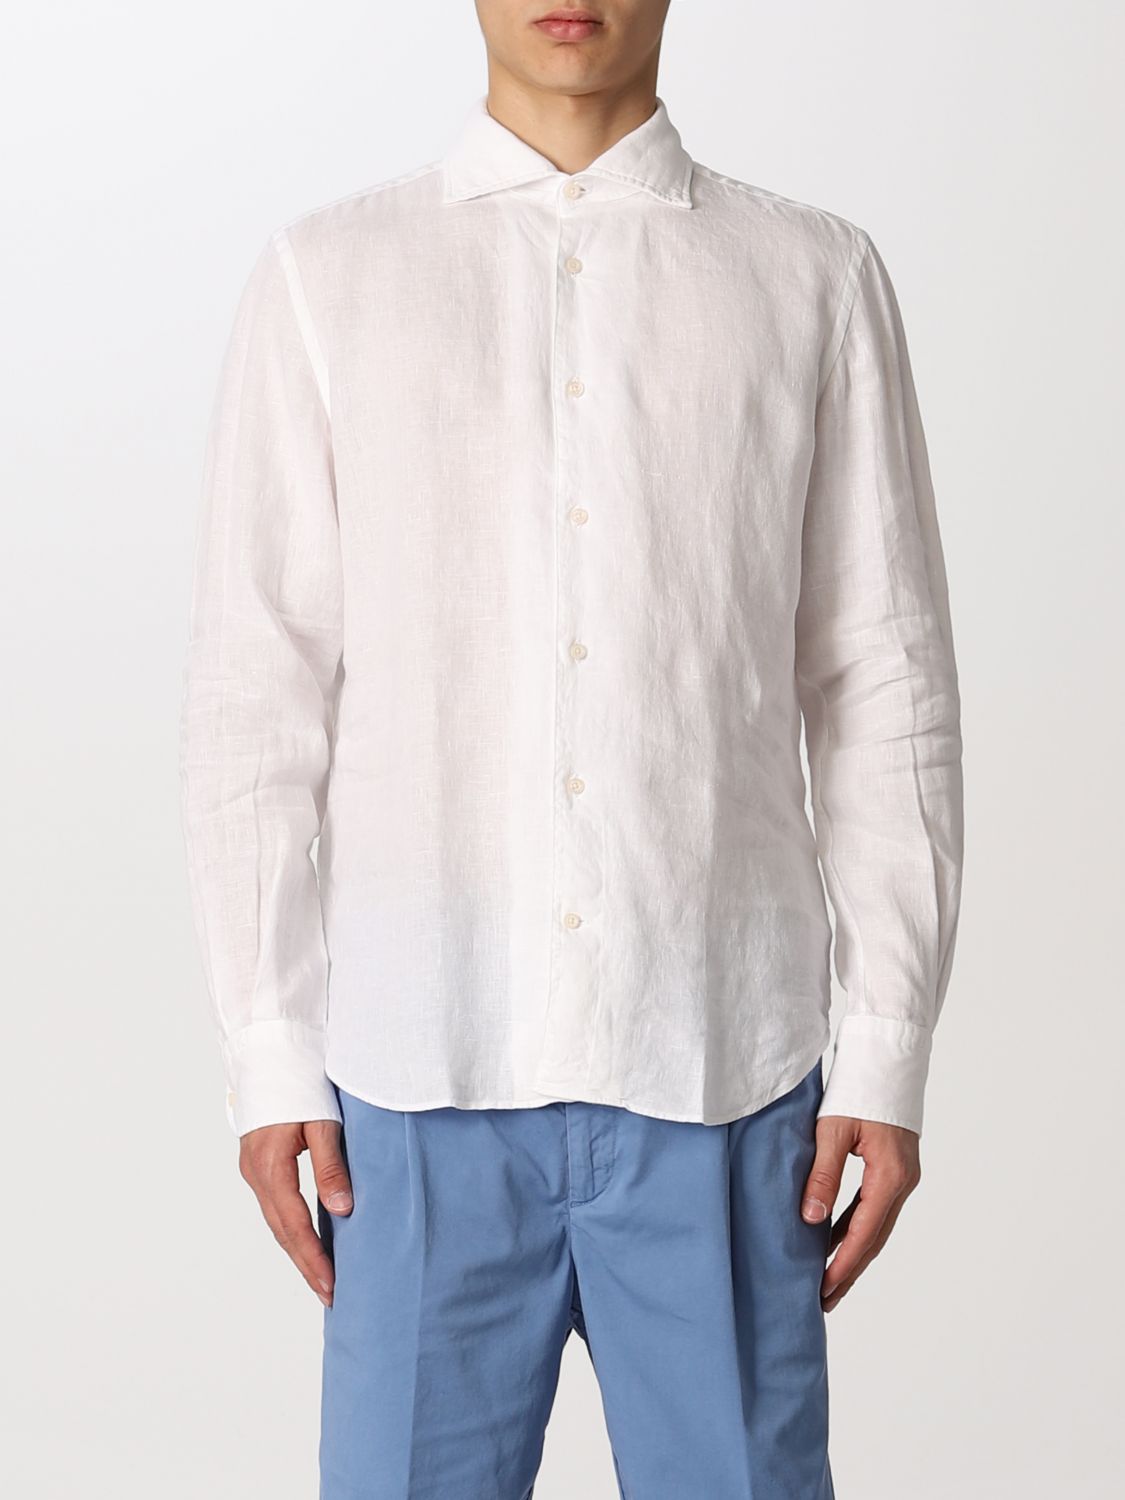 BOGGI MILANO: linen shirt - White | Boggi Milano shirt BO22P033708 ...